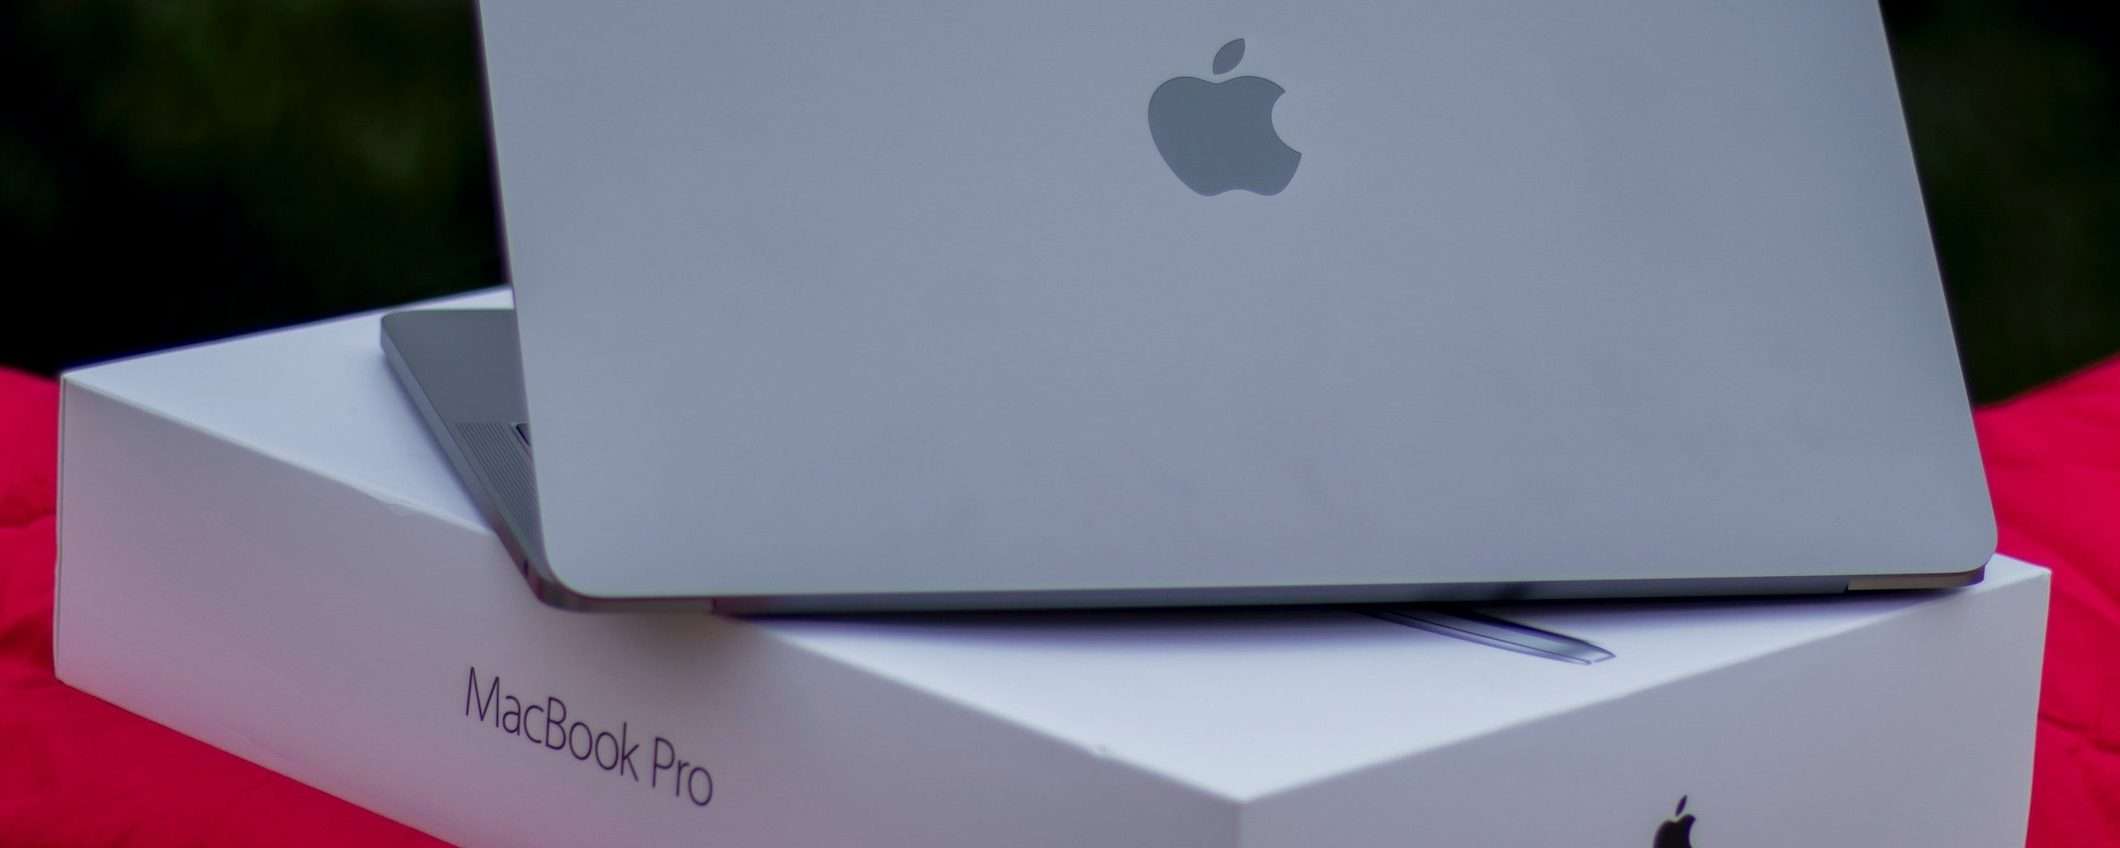 MacBook: potrebbero venire prodotti in Thailandia